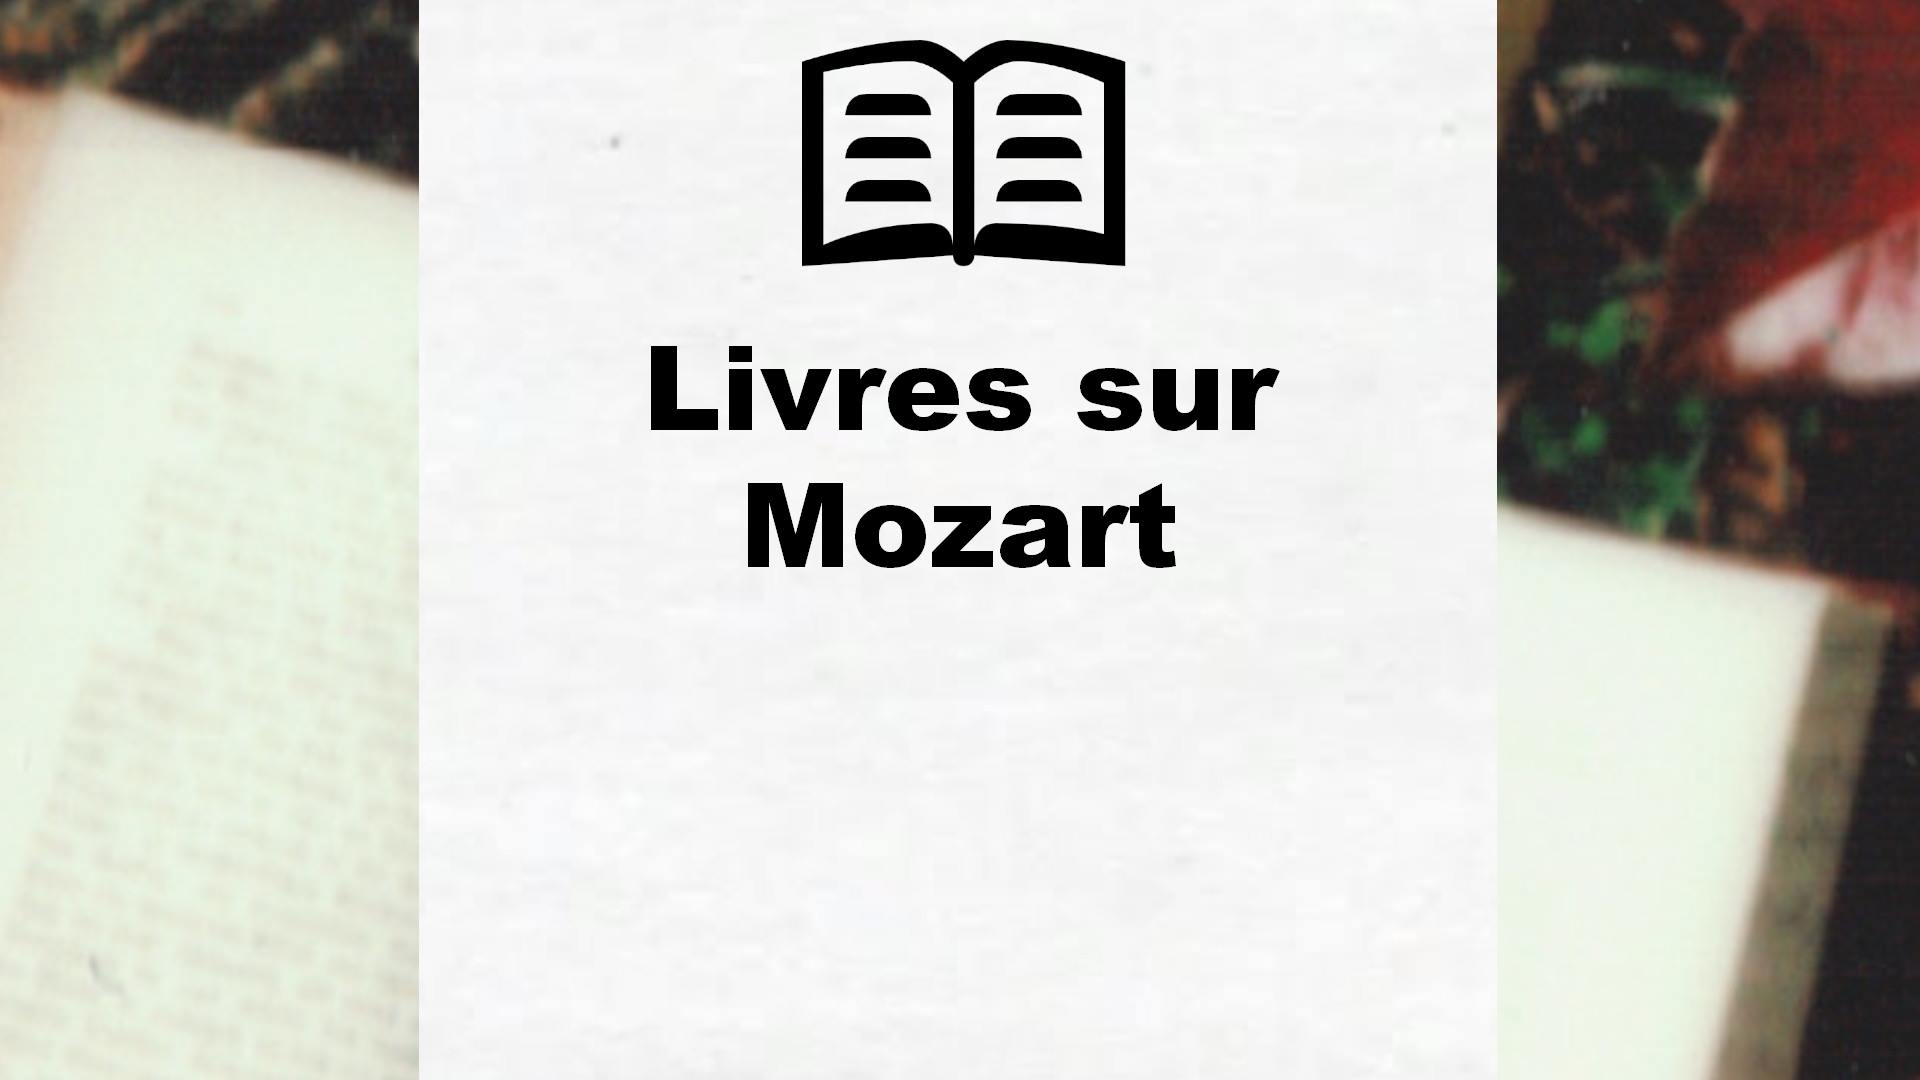 Livres sur Mozart